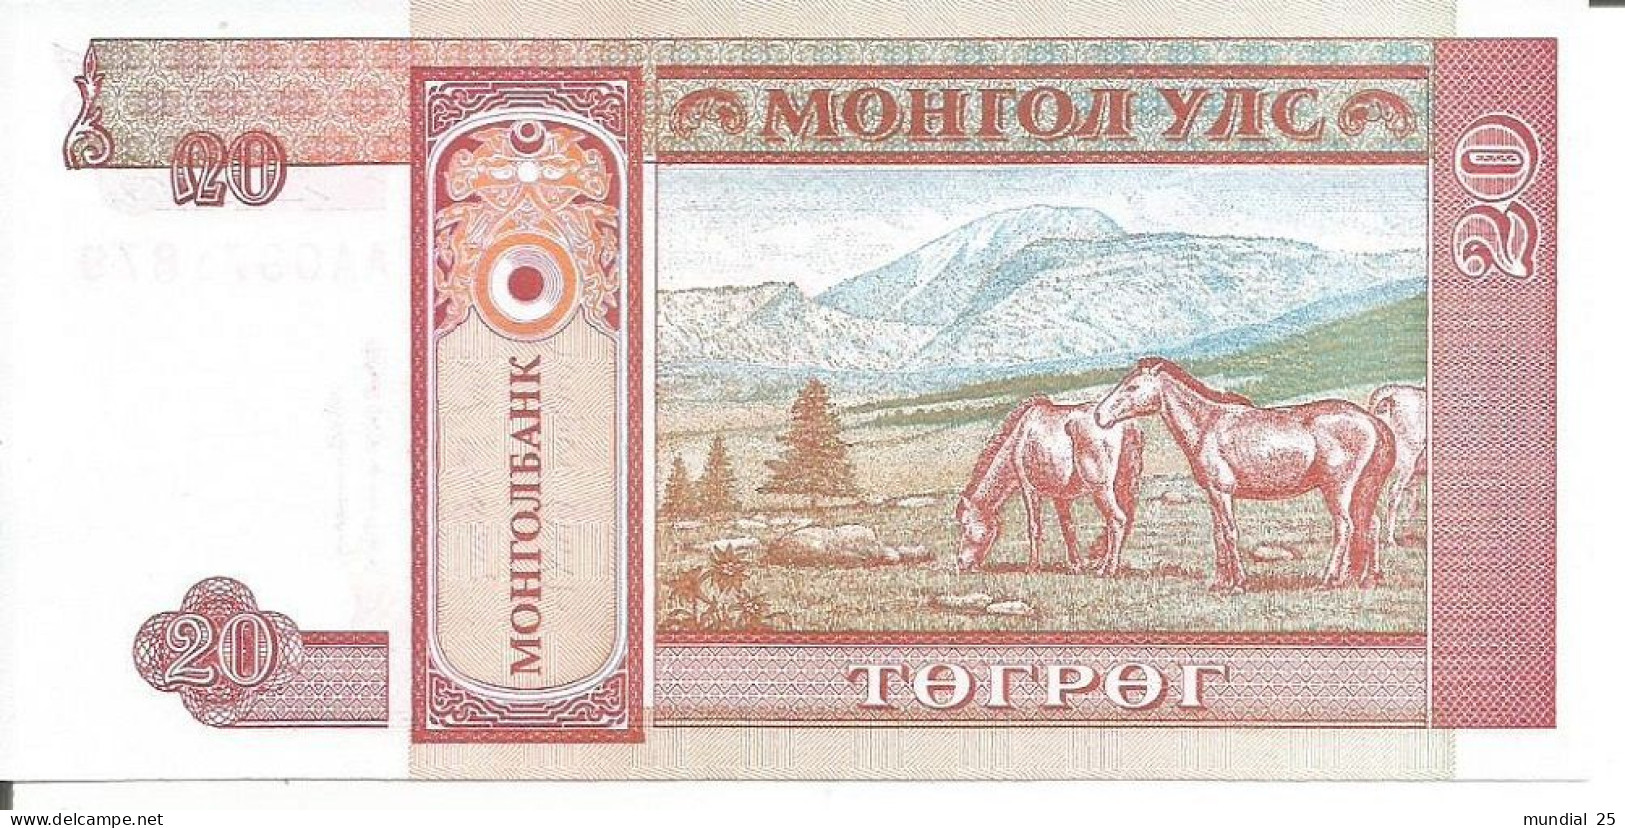 MONGOLIA 20 TUGRIK N/D (1993) - Mongolia